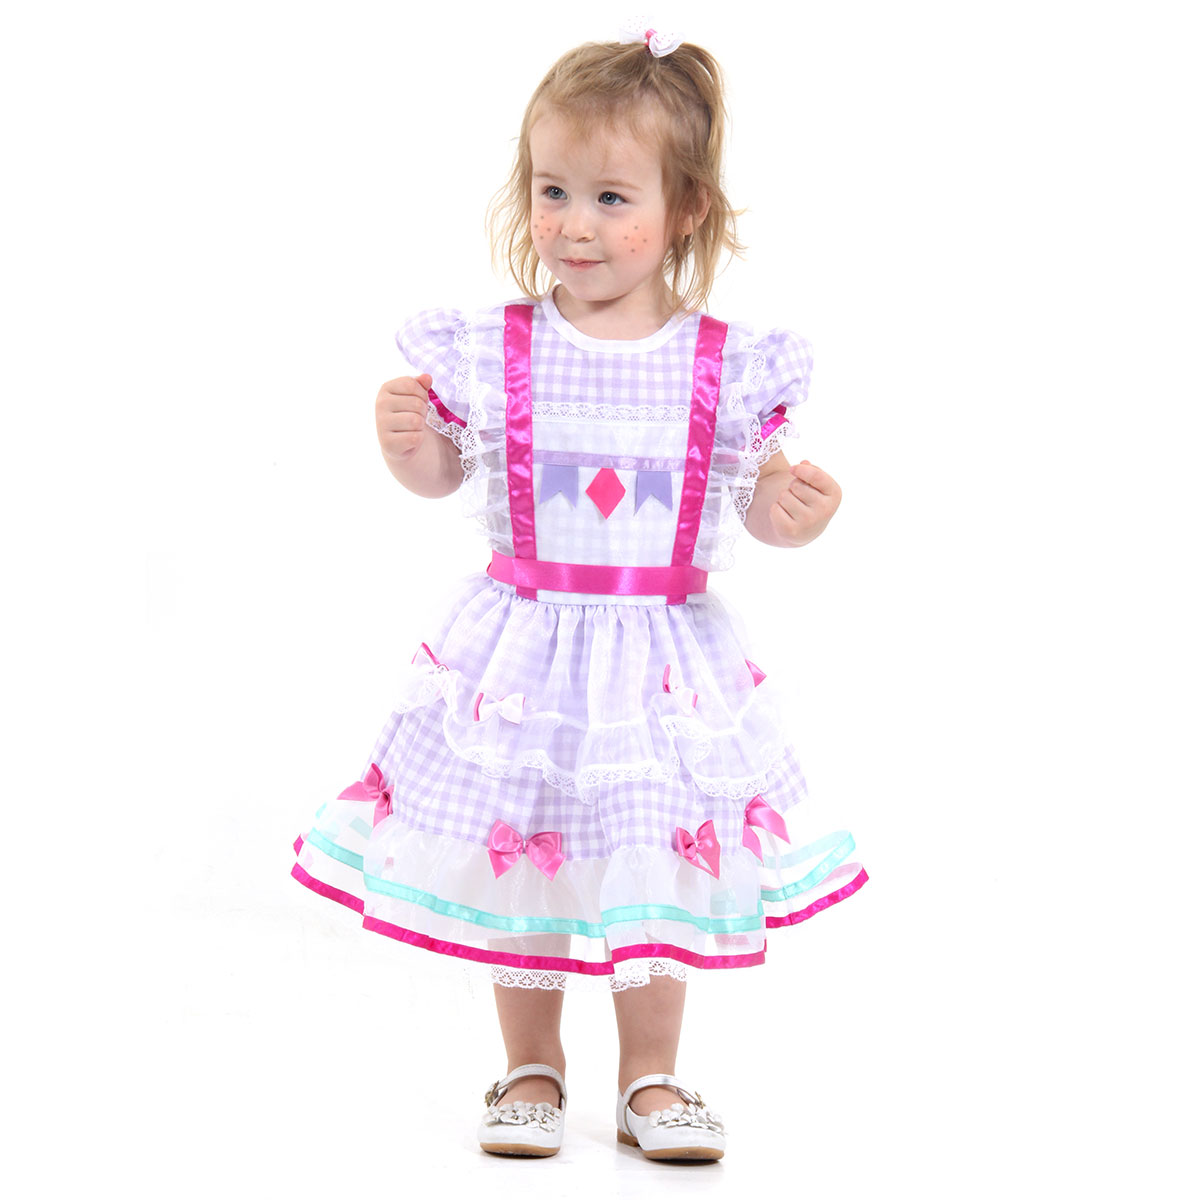 Fantasia Arlequina Dress Up Infantil 16321-P Sulamericana Fantasias  Preto/Vermelho P 3/4 Anos